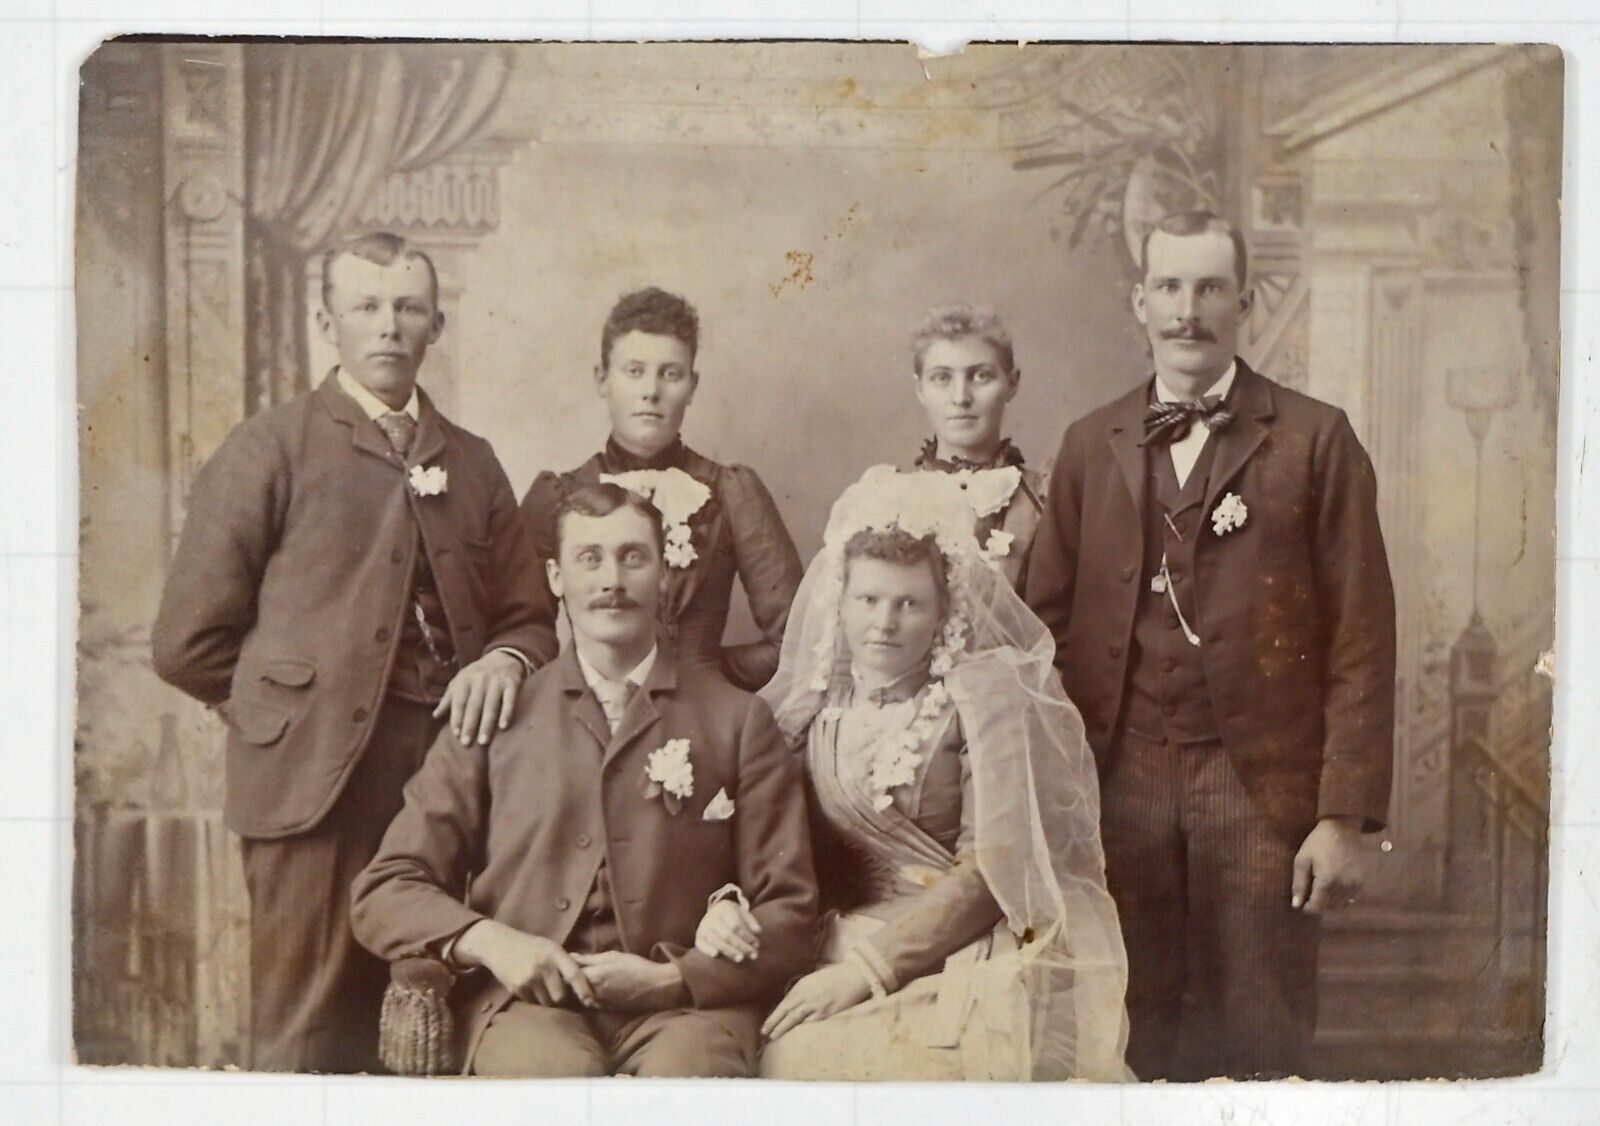 1880s Wedding Party - Bride, Groom, 2 Bridesmaids, 2 Groomsmen; Antique Photo